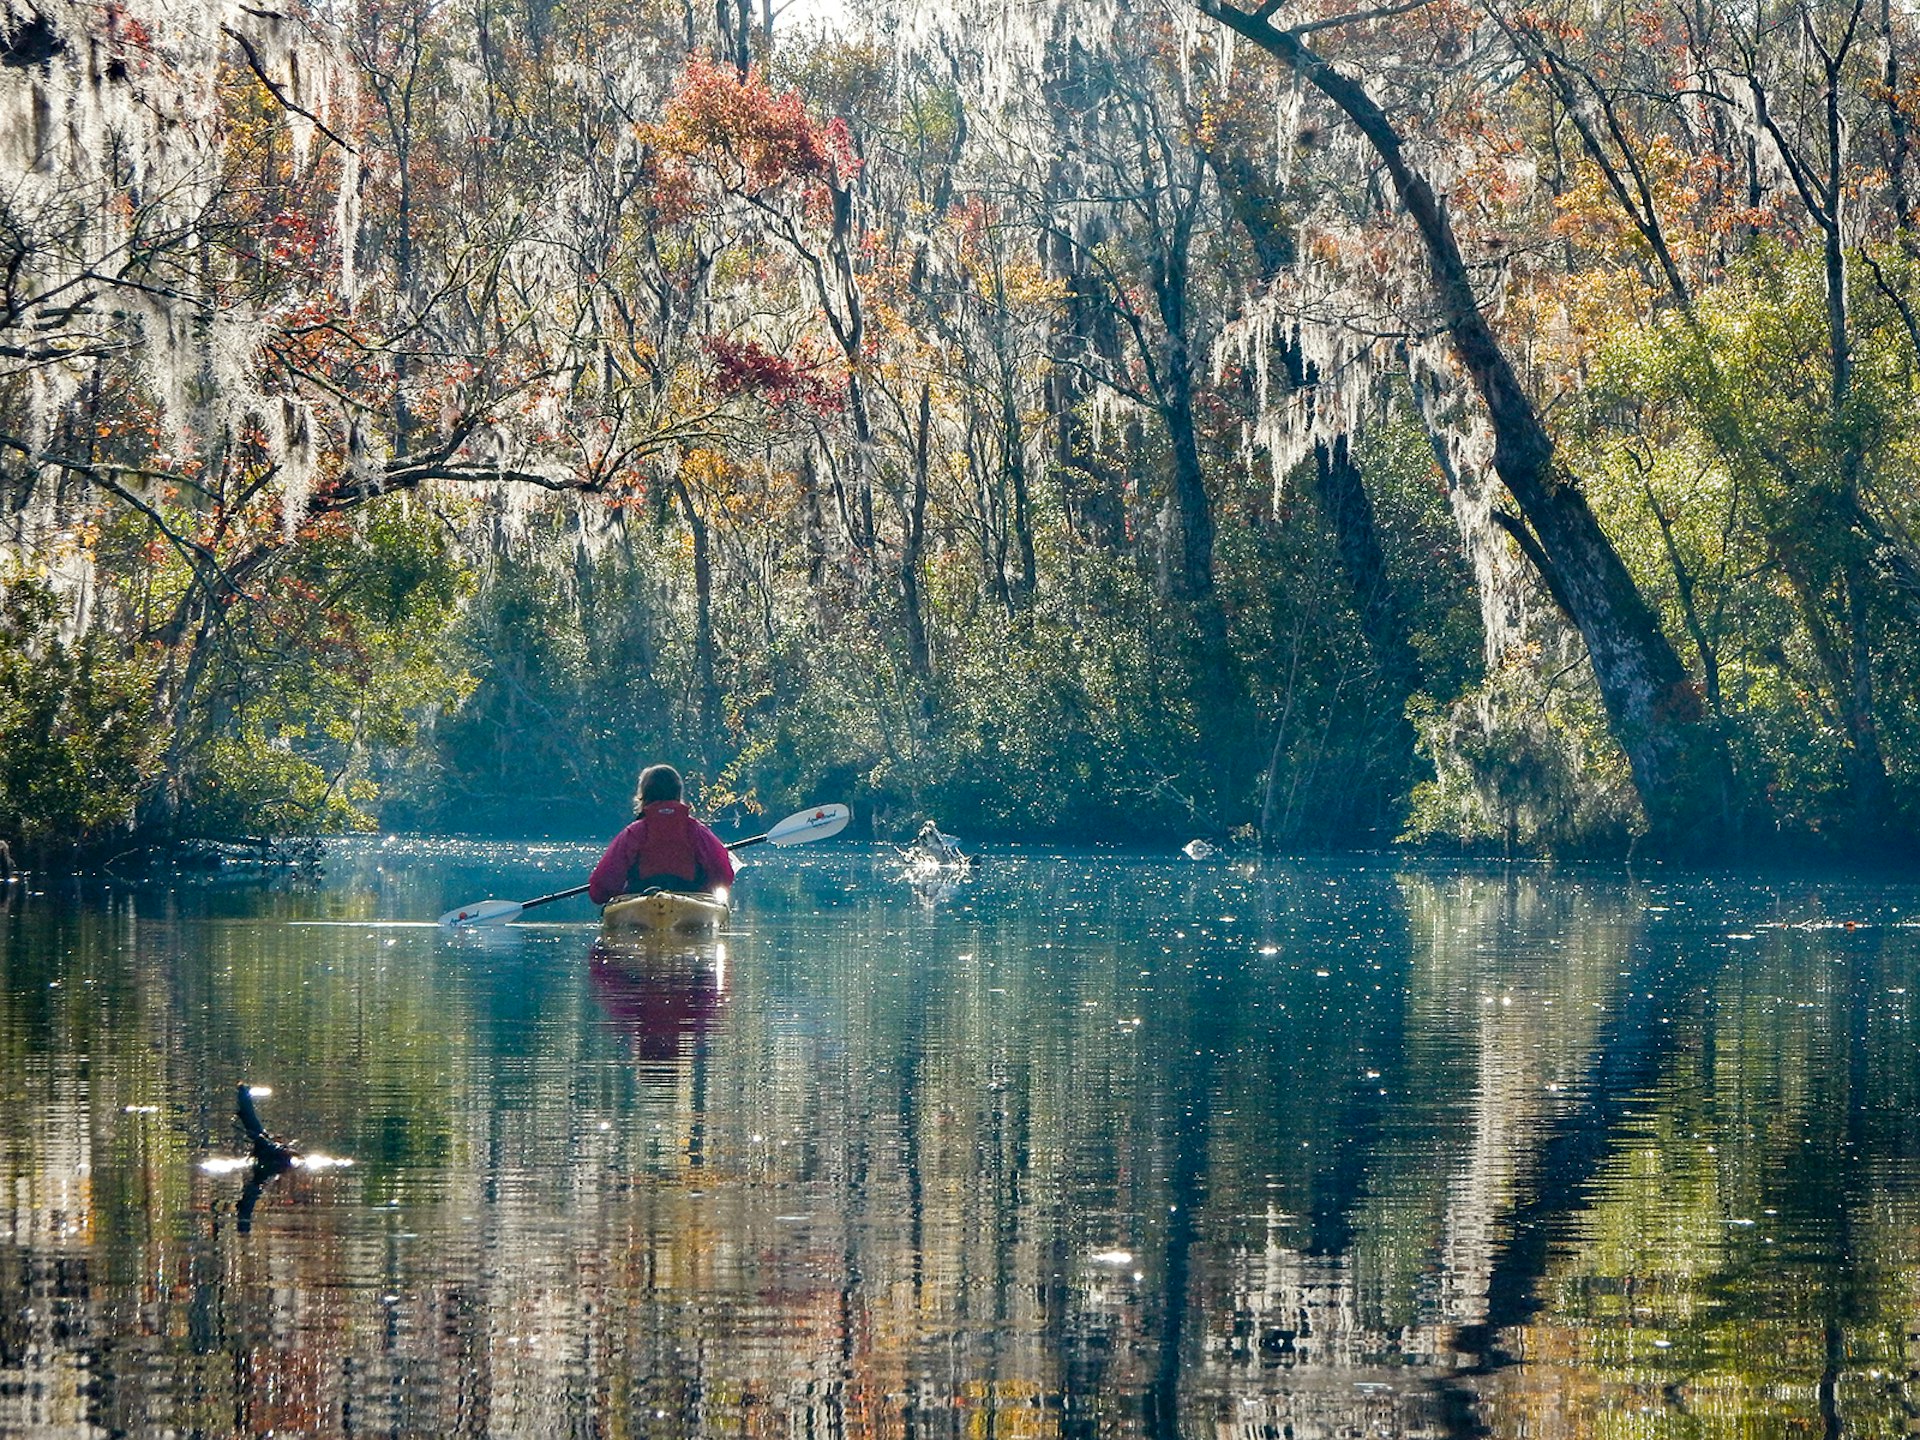 Kayaking amid Spanish moss in Jacksonville, Florida